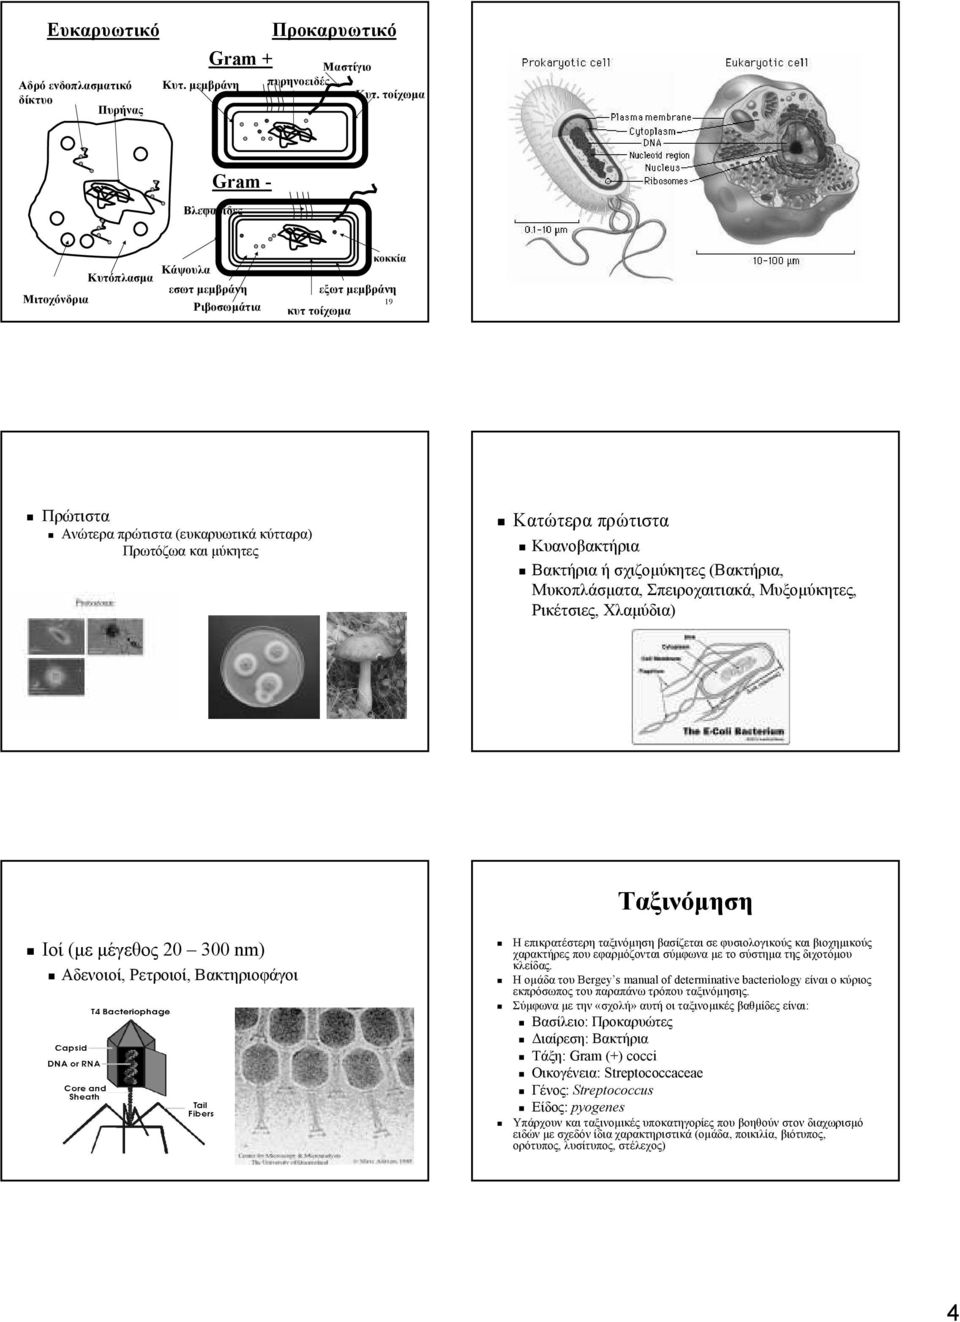 πρώτιστα Κυανοβακτήρια Βακτήρια ή σχιζοµύκητες (Βακτήρια, Μυκοπλάσµατα, Σπειροχαιτιακά, Μυξοµύκητες, Ρικέτσιες, Χλαµύδια) Ιοί (µε µέγεθος 20 300 nm) Αδενοιοί, Ρετροιοί, Βακτηριοφάγοι Ταξινόµηση Η